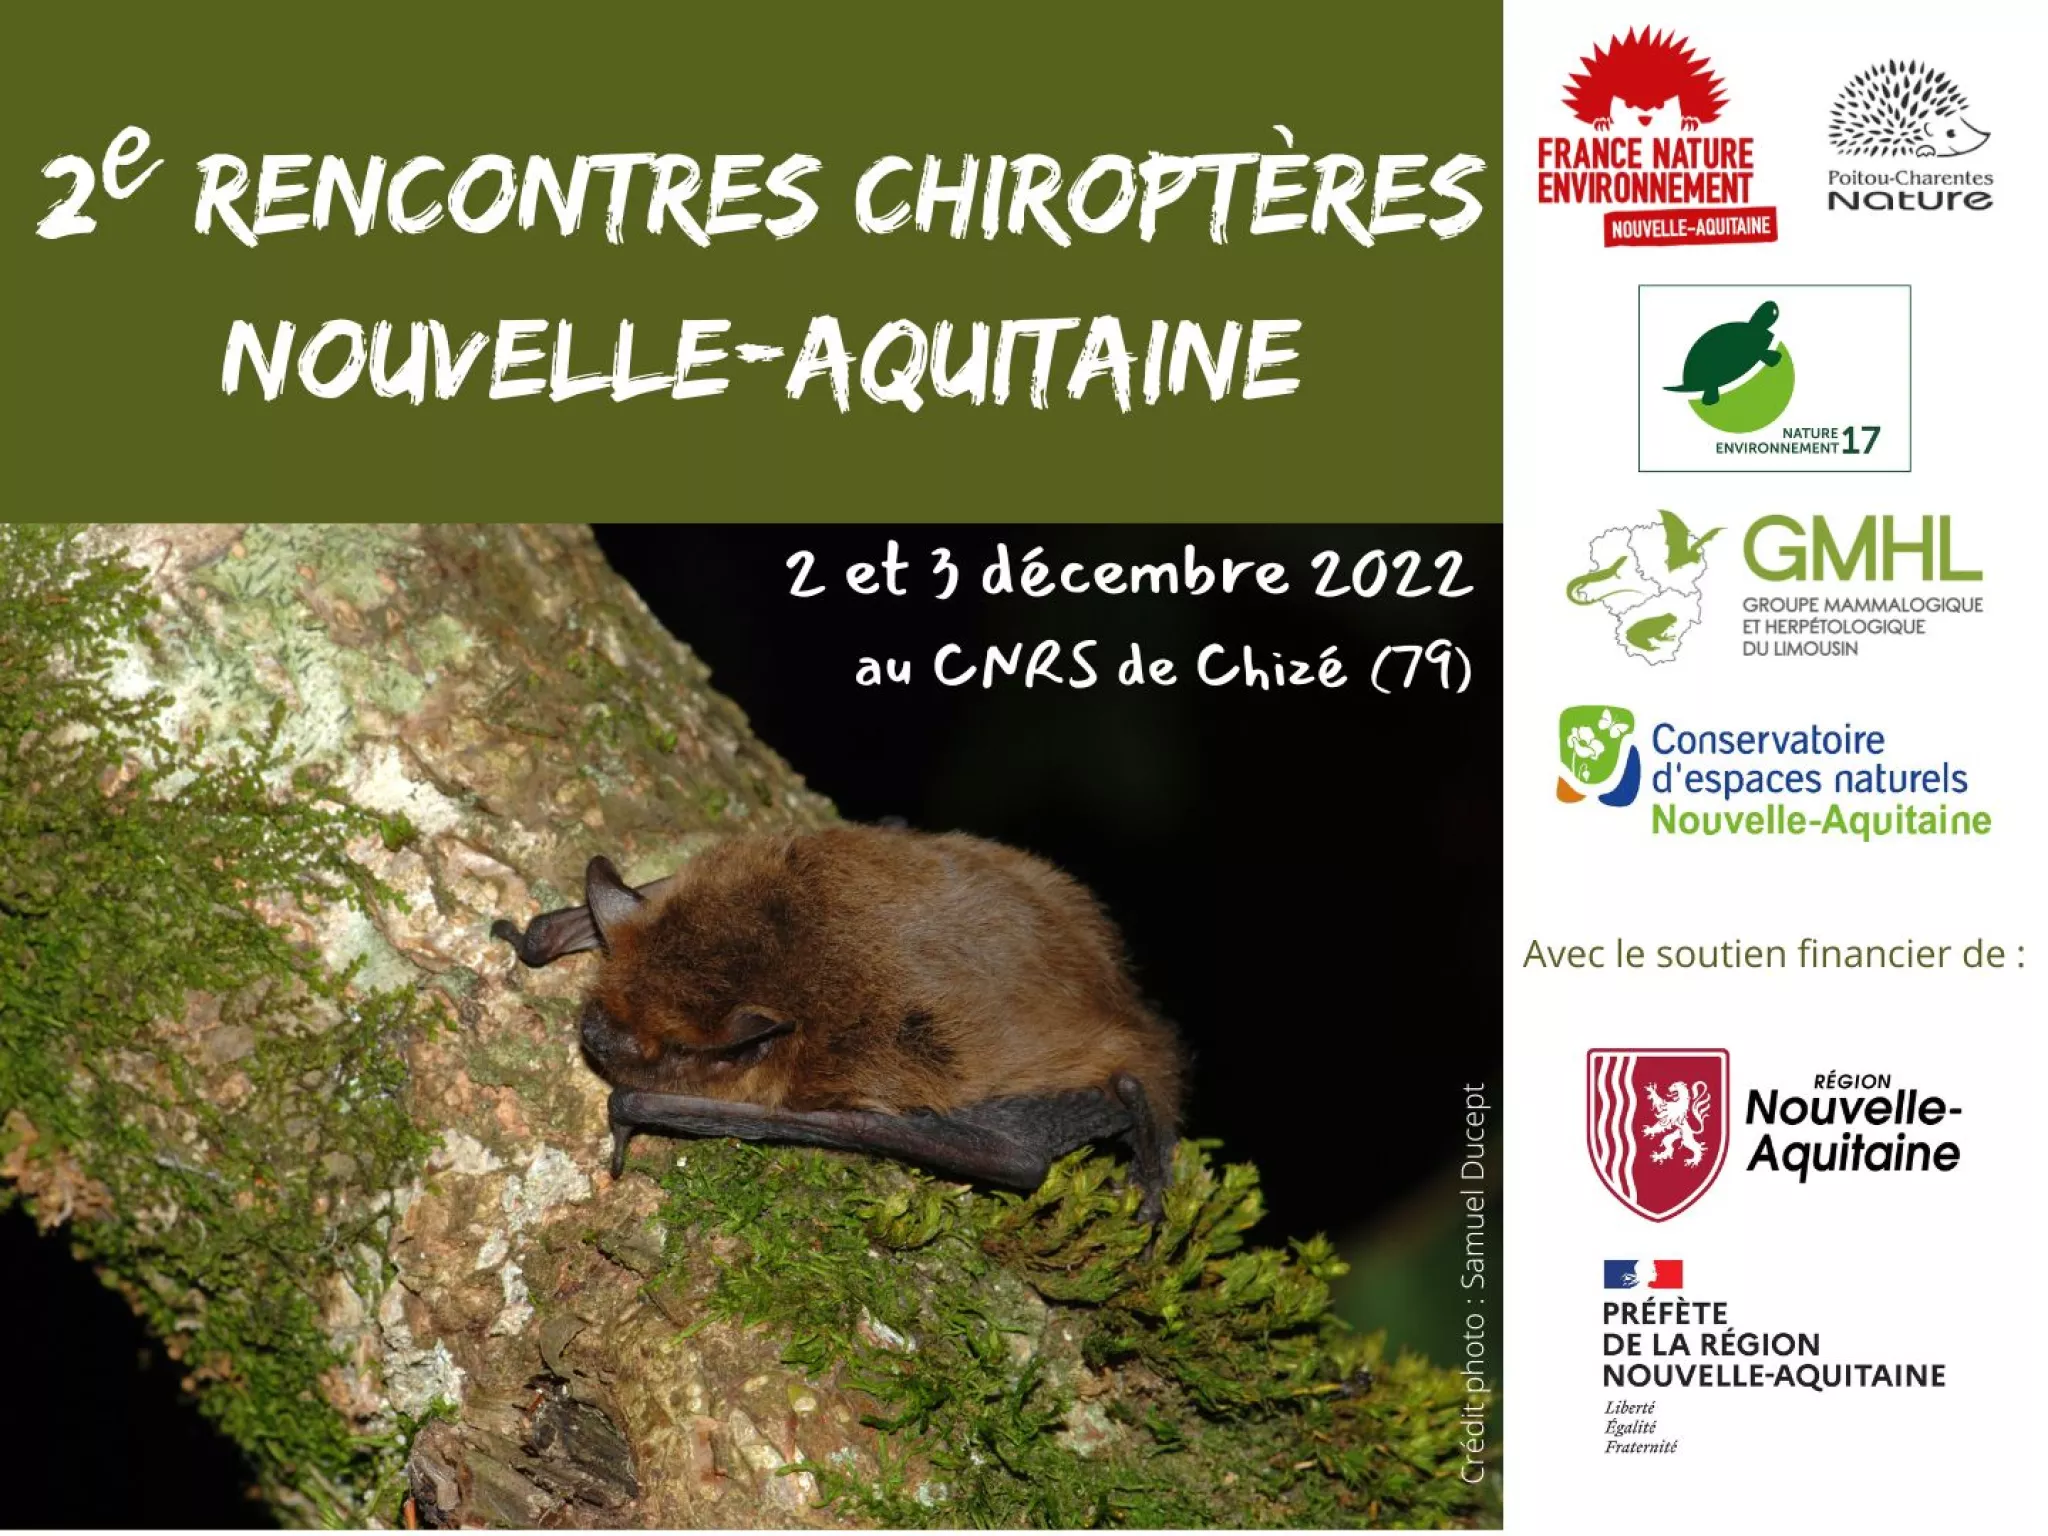 Rencontres chiroptères Nouvelle-Aquitaine - 2 et 3 décembre 2022